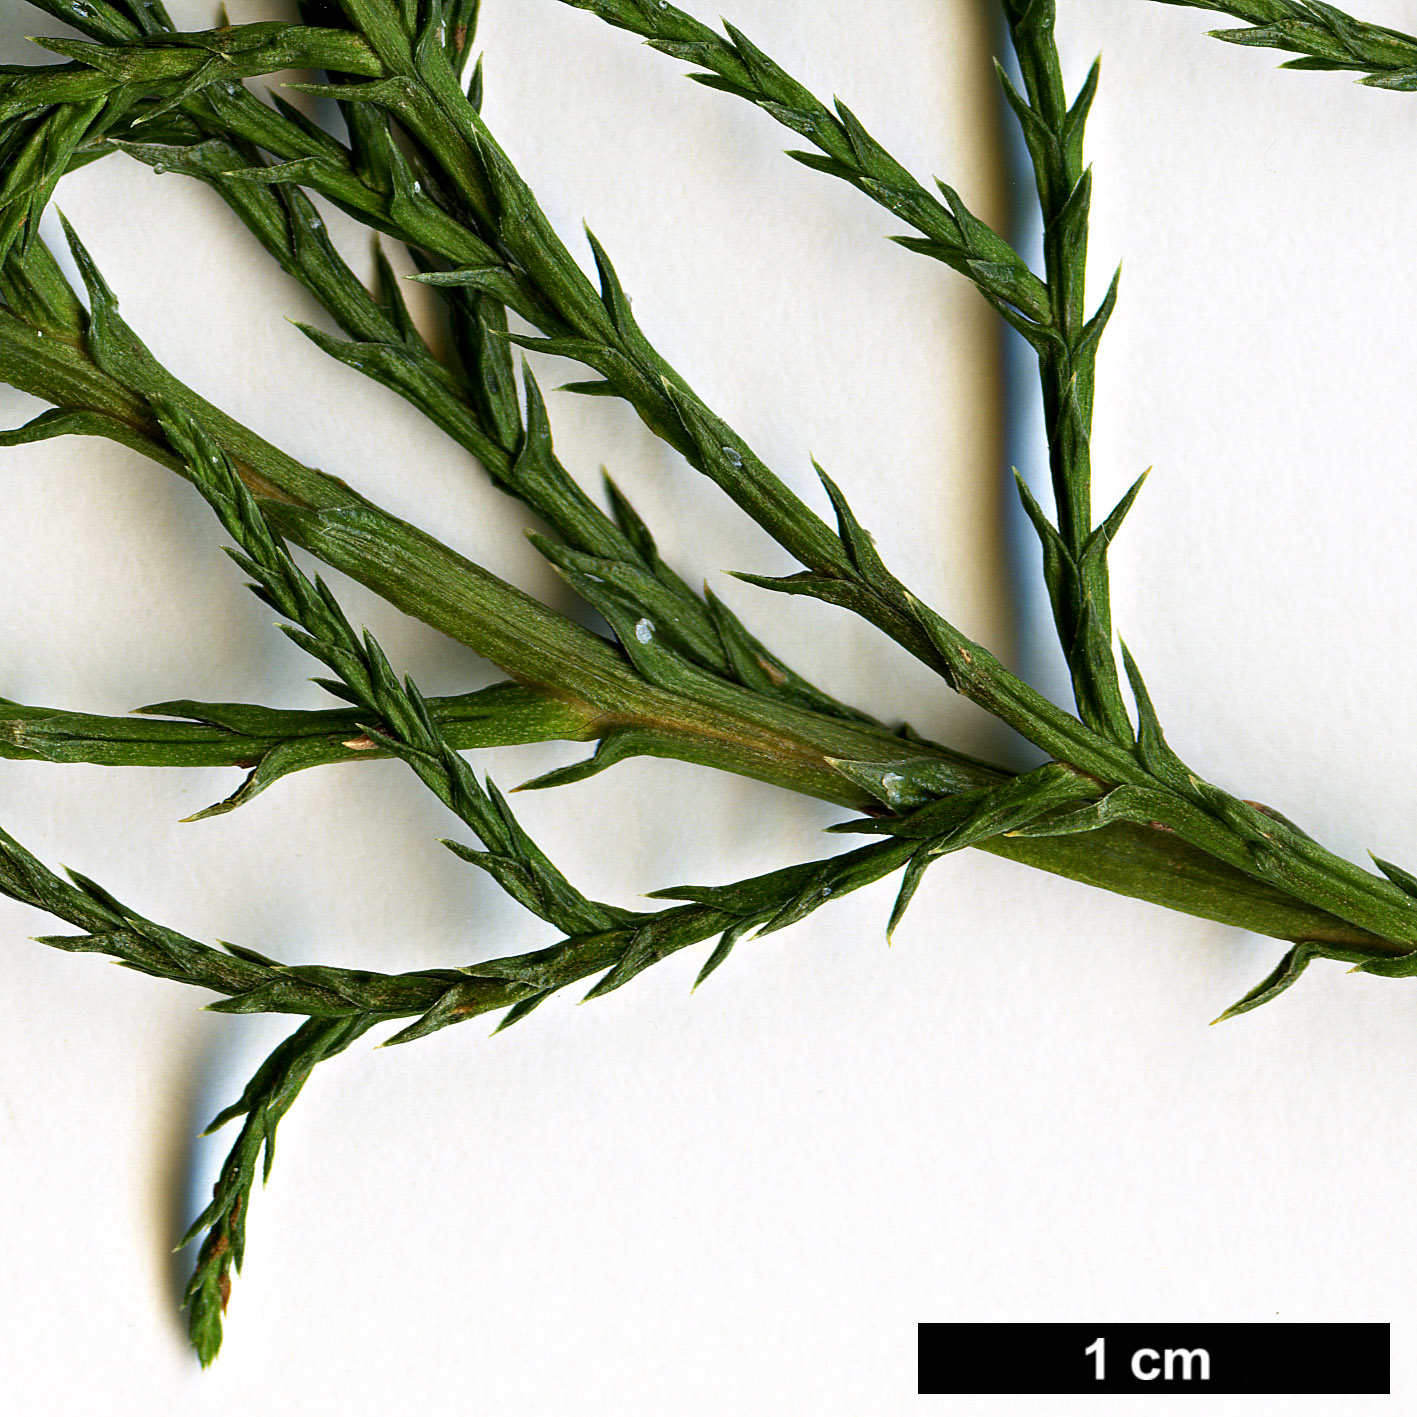 High resolution image: Family: Cupressaceae - Genus: Cupressus - Taxon: lusitanica